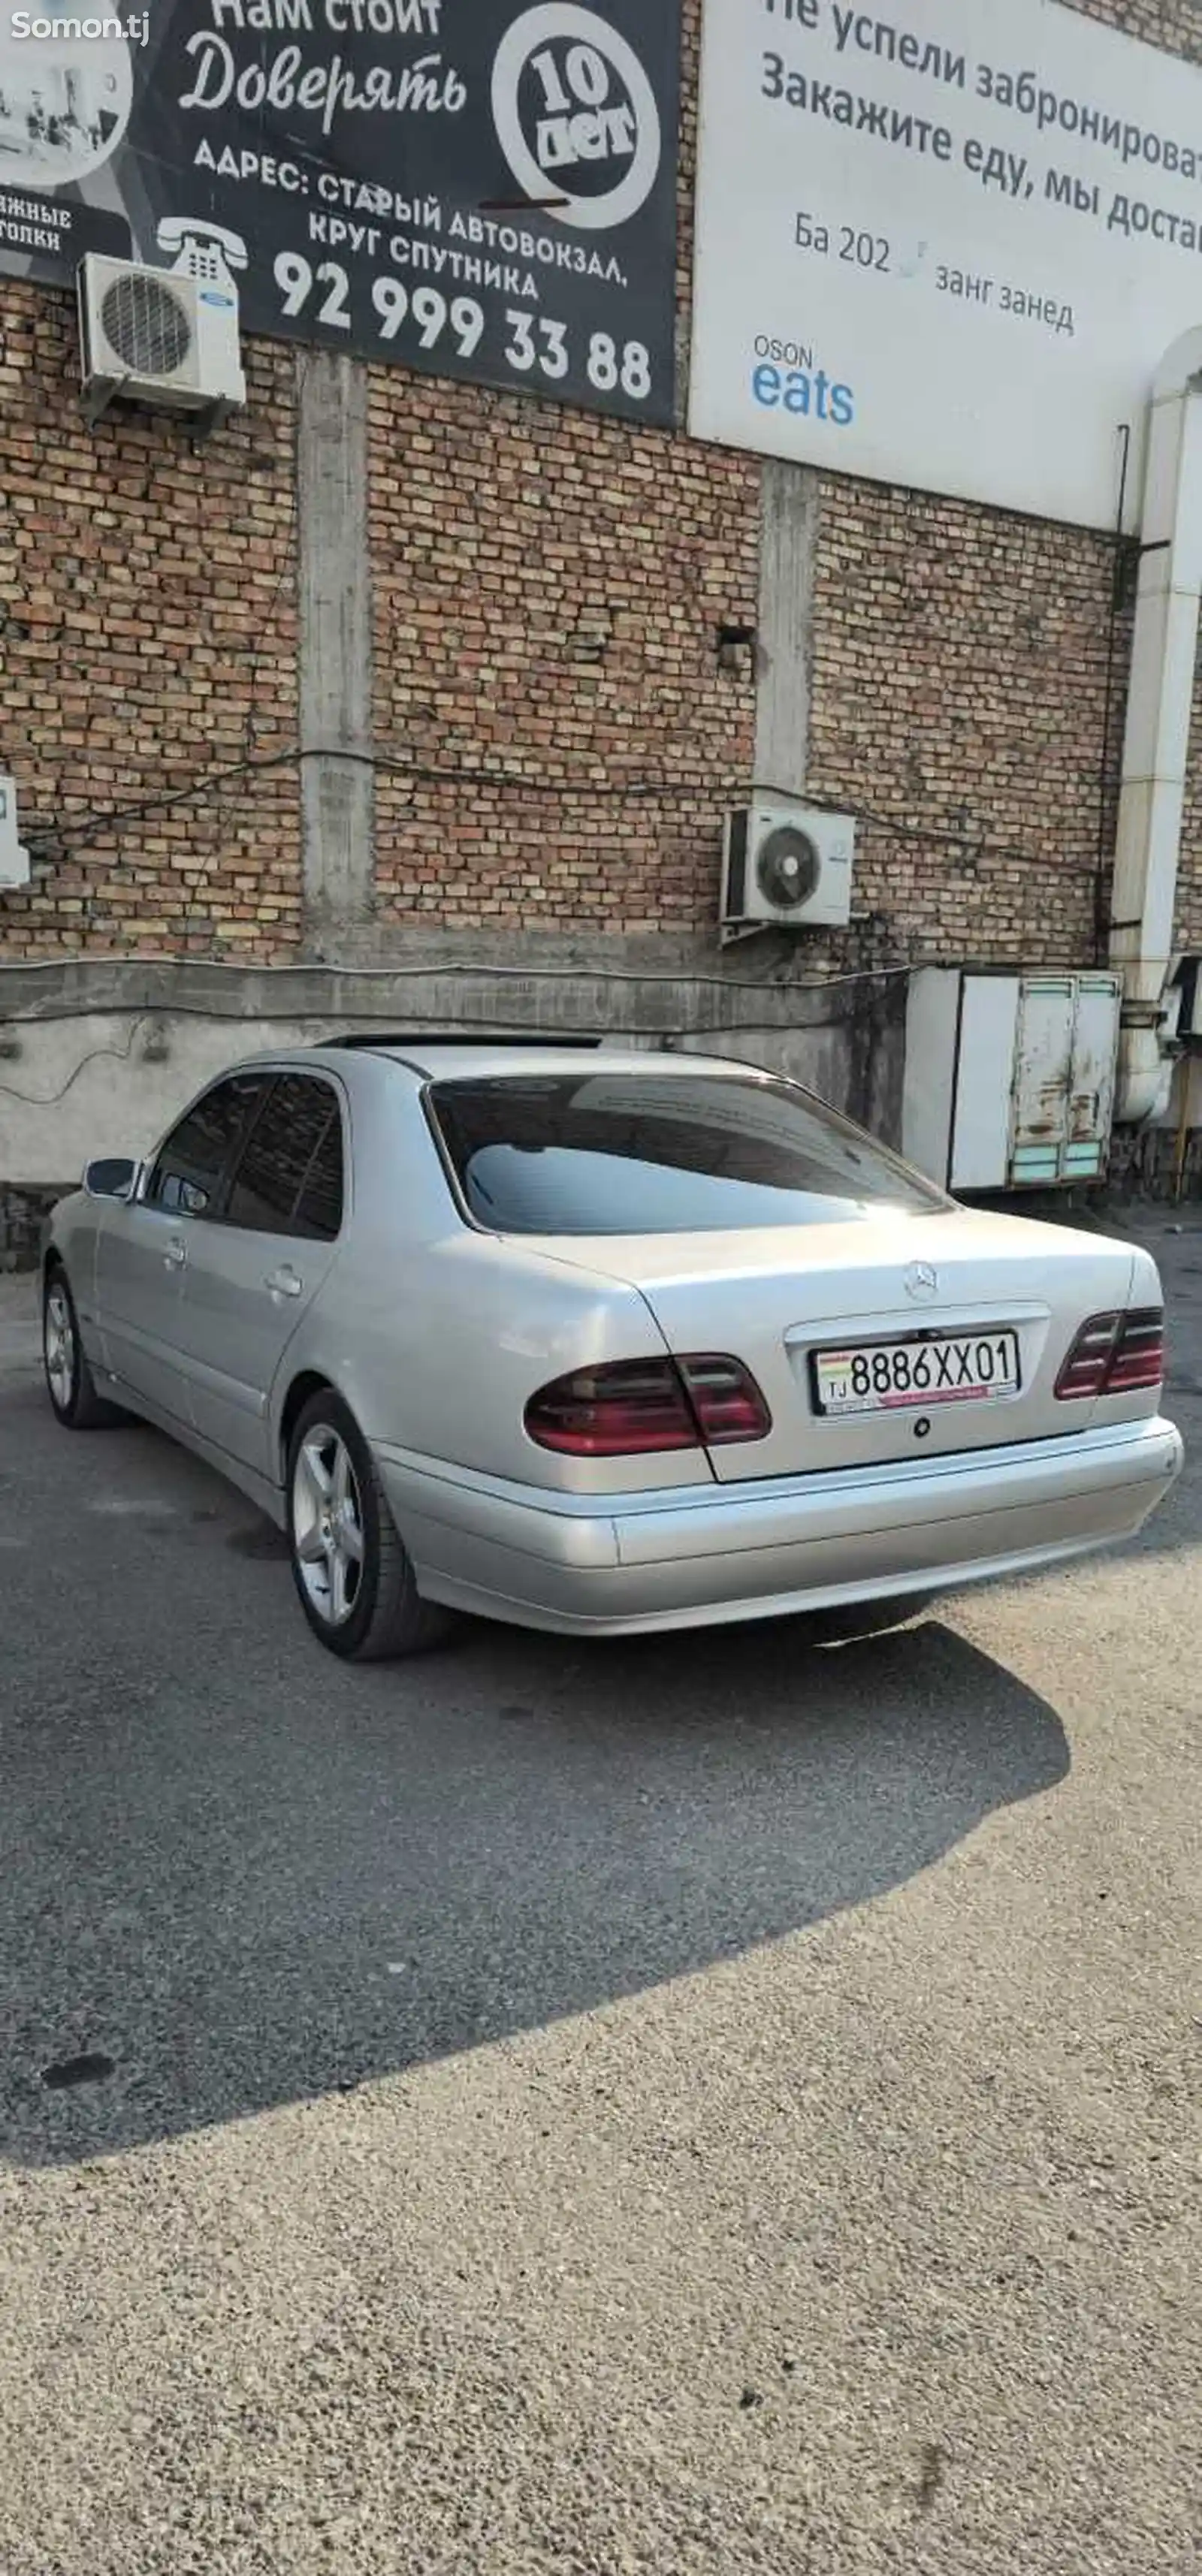 Mercedes-Benz E class, 1999-2